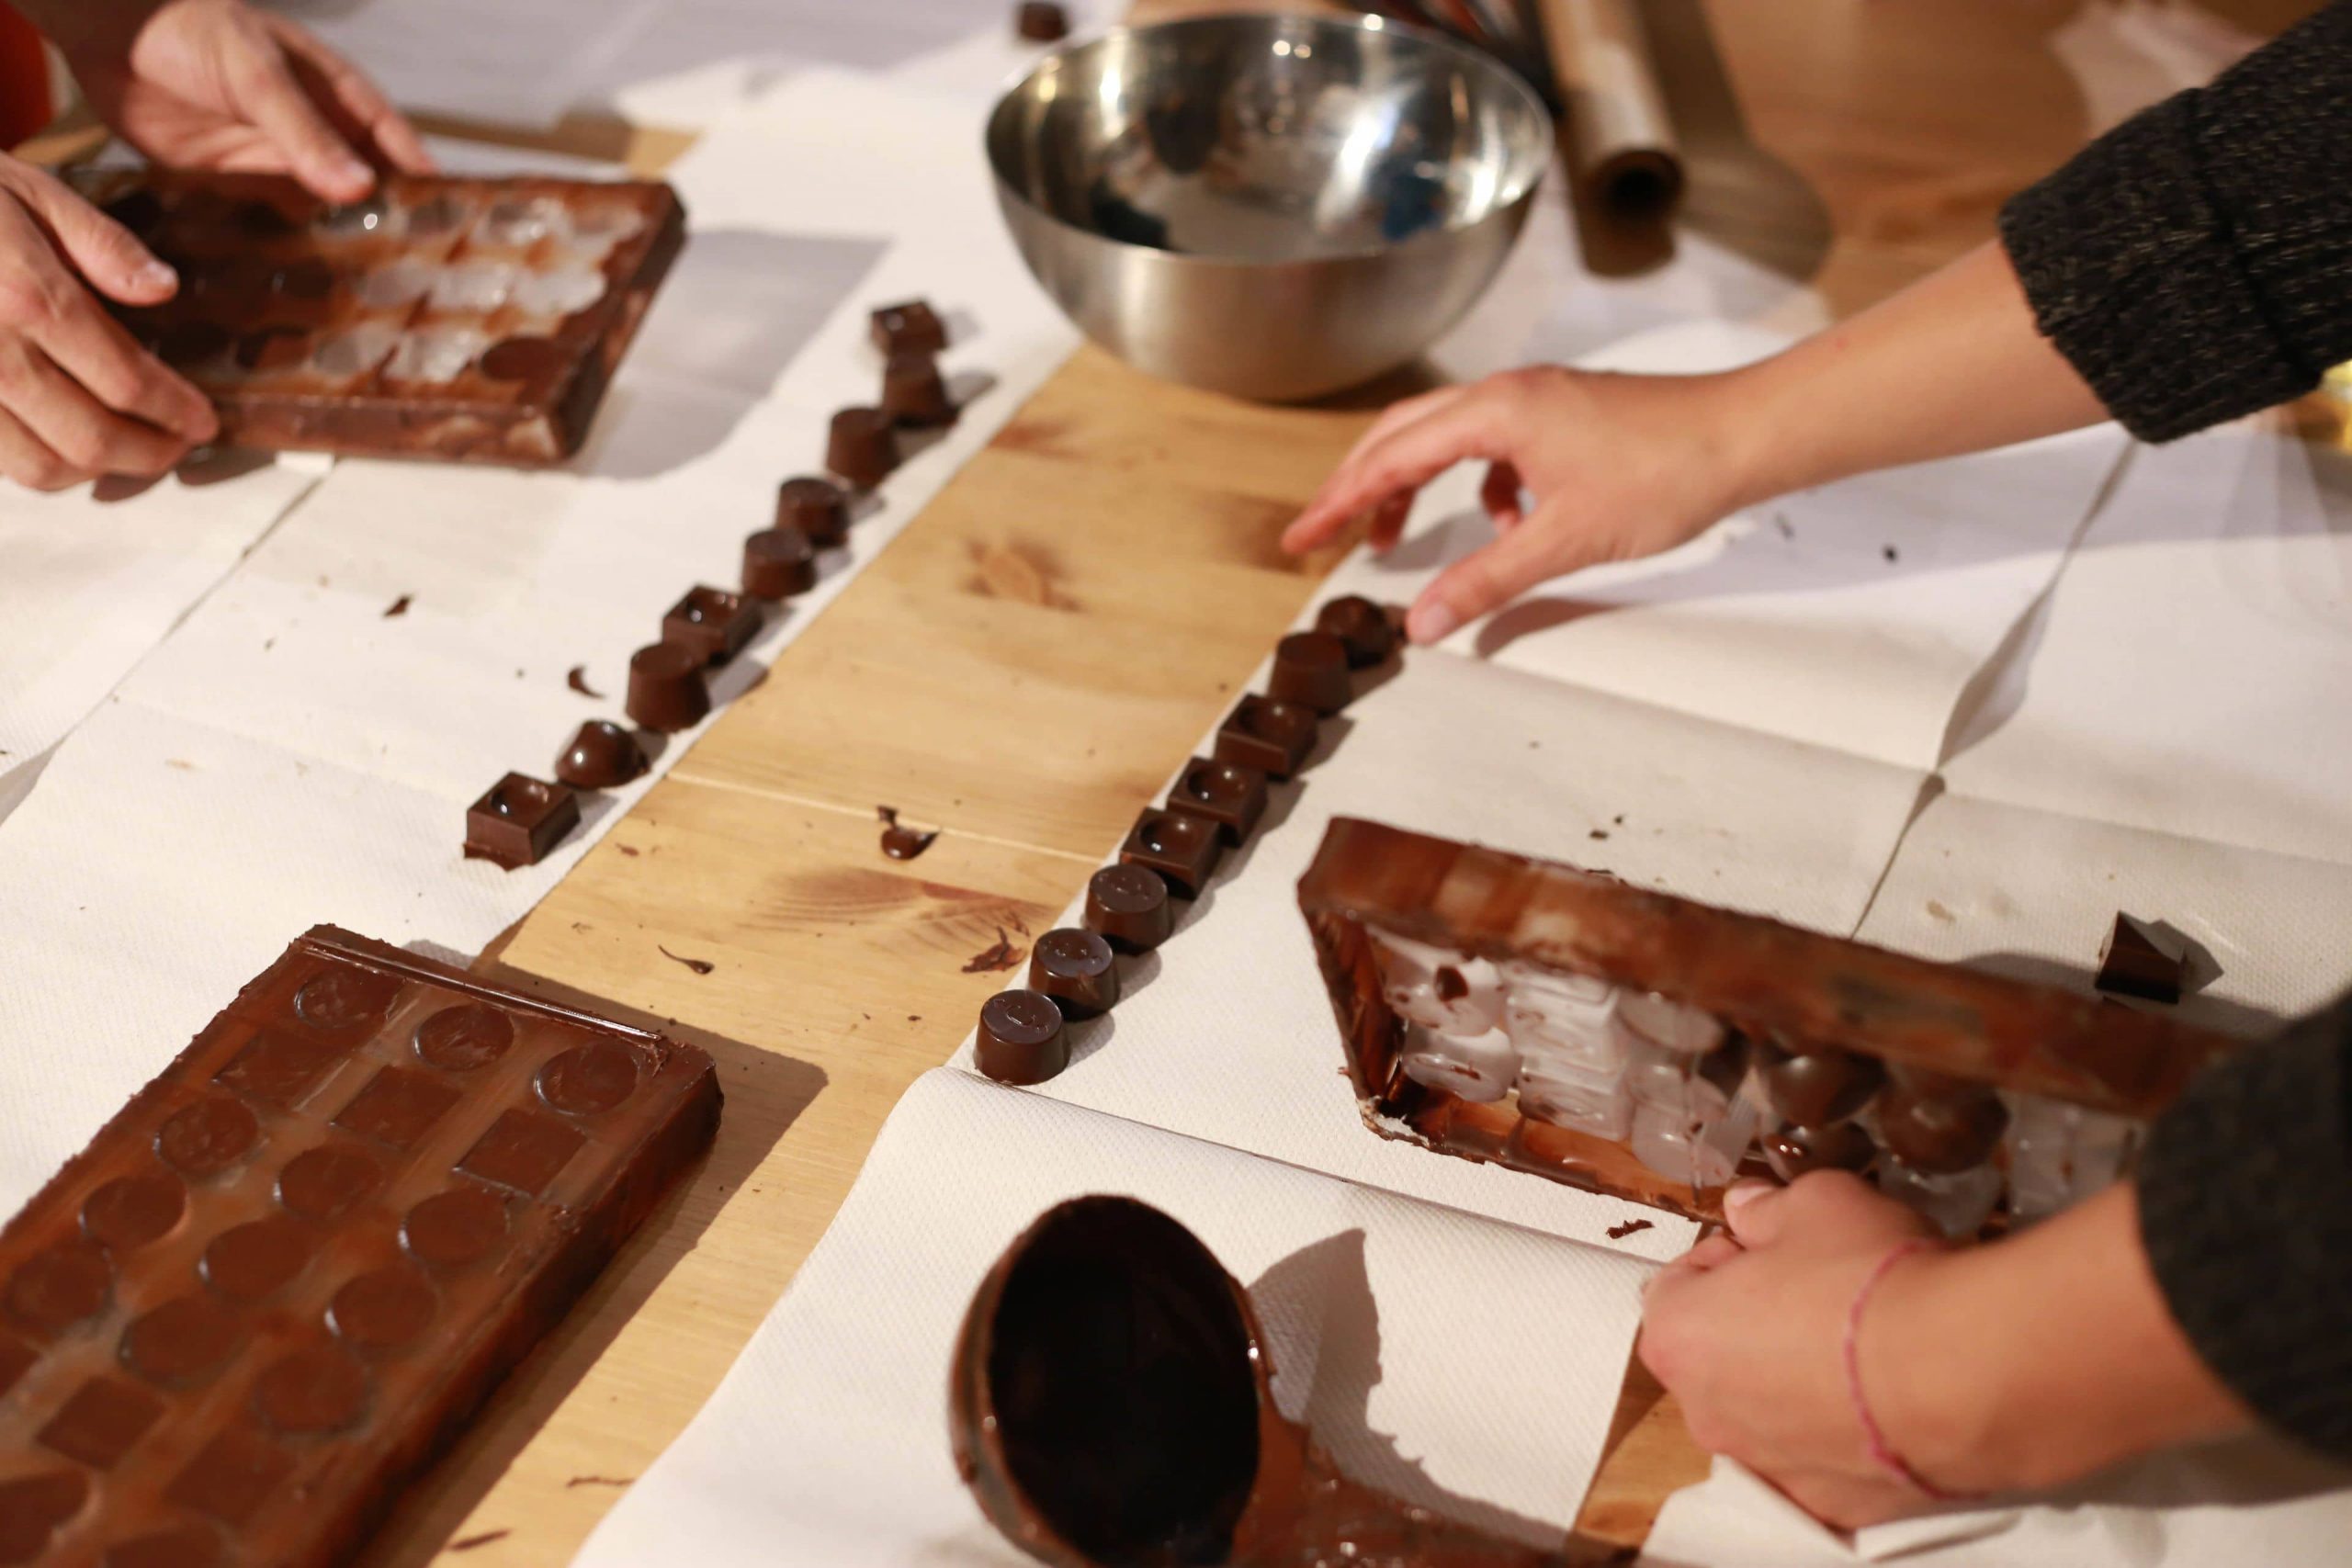 Chocolate Making Tour in Belgium